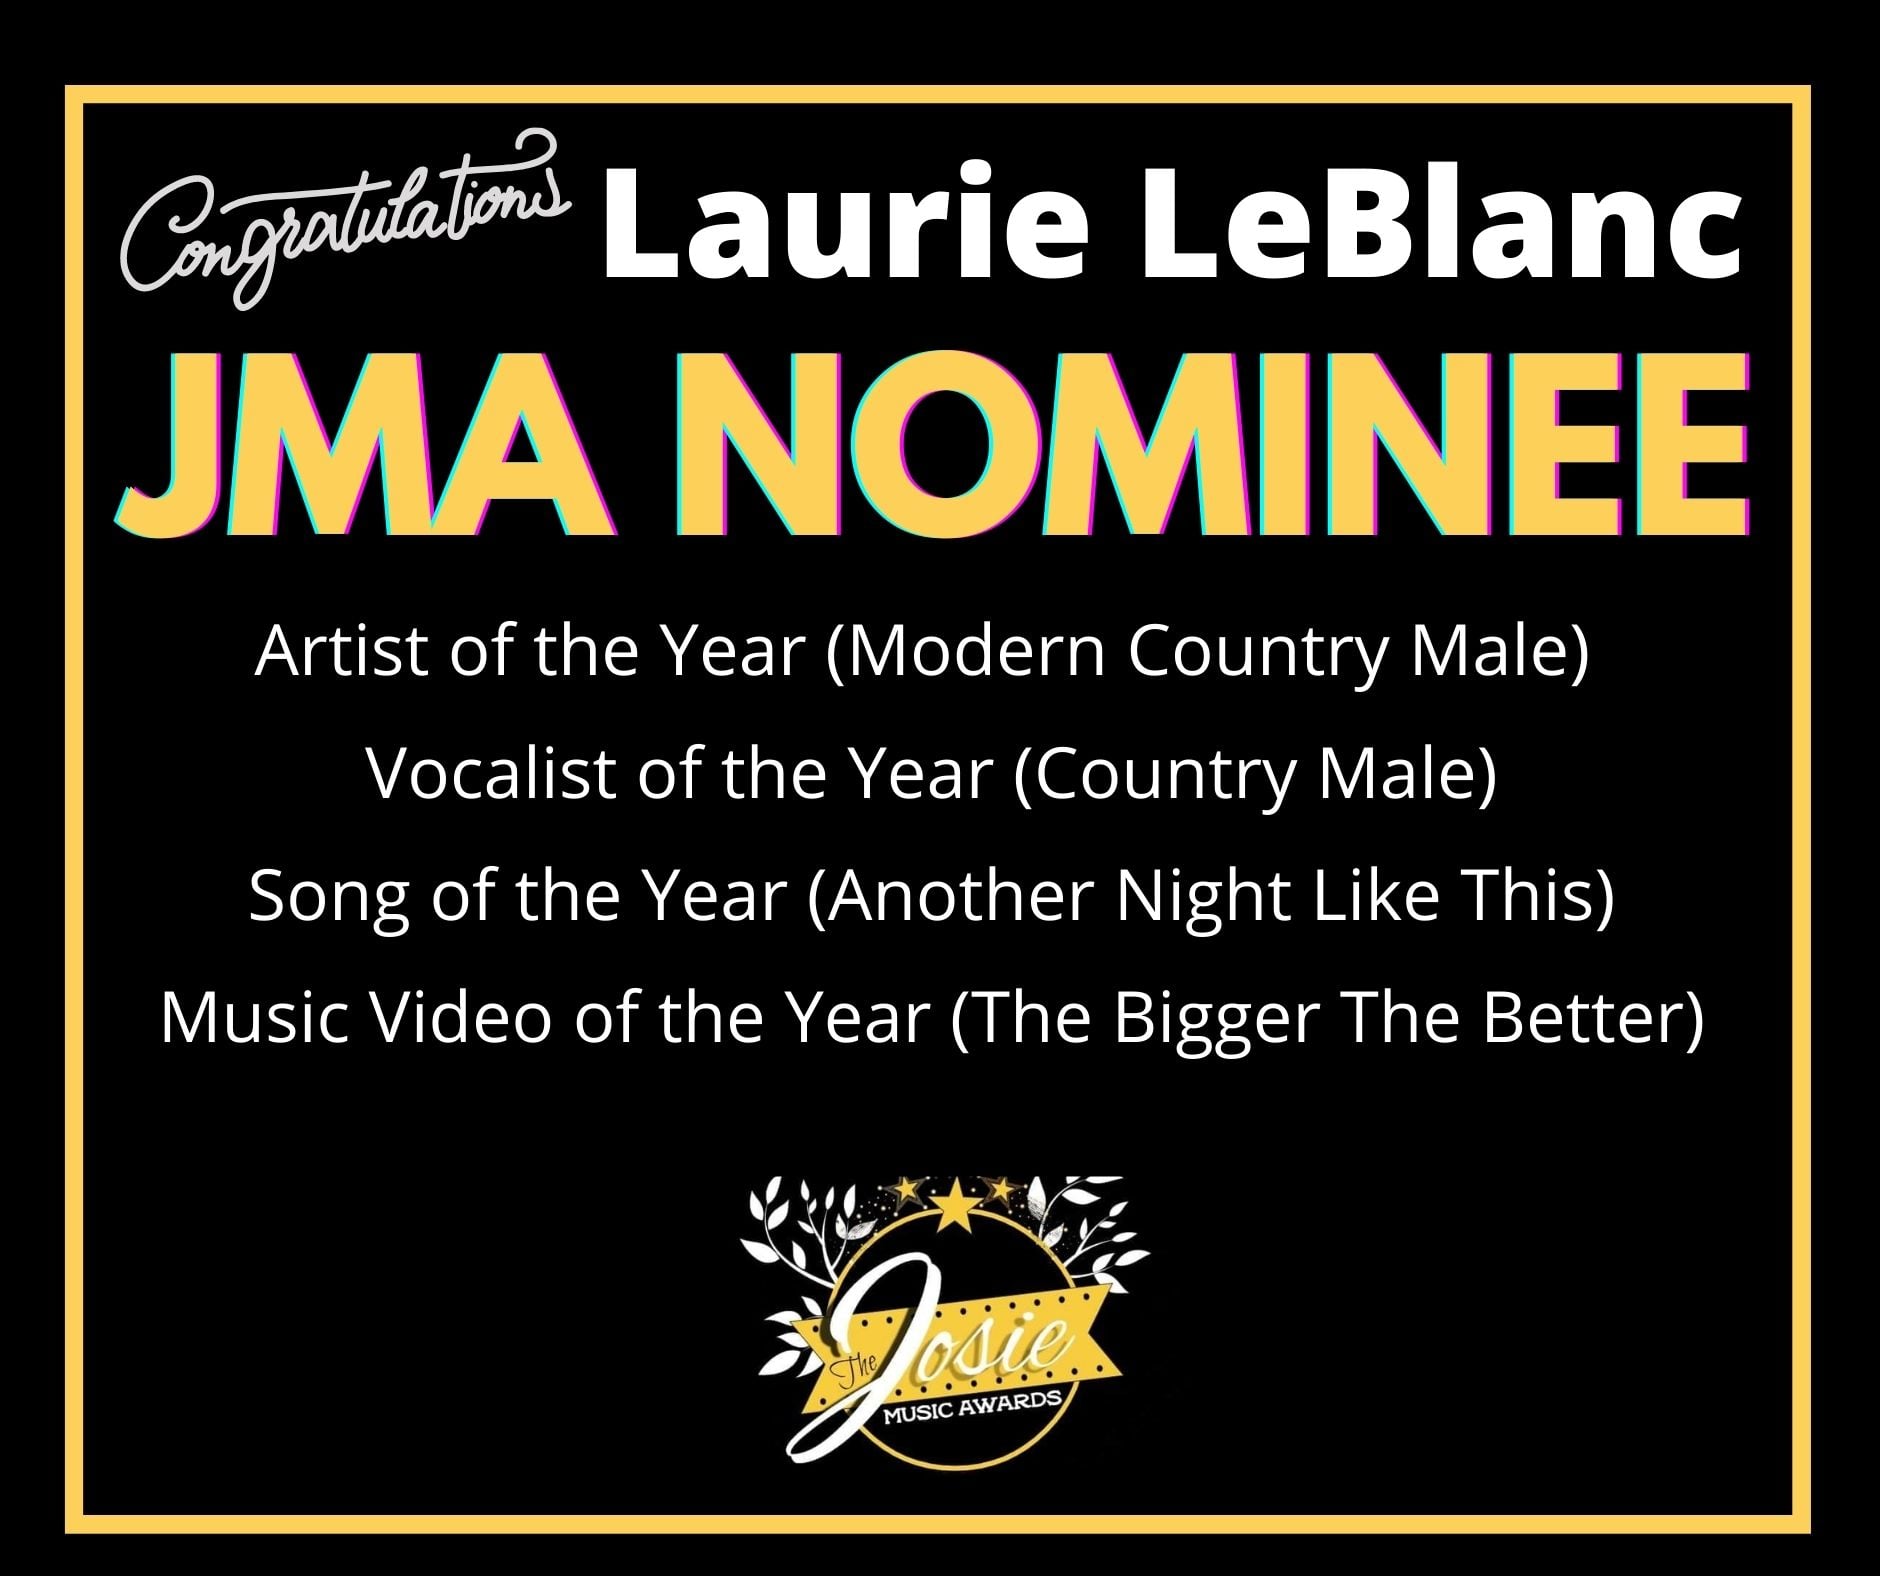 4 Nominations au 7e Josie Music Awards pour Laurie LeBlanc